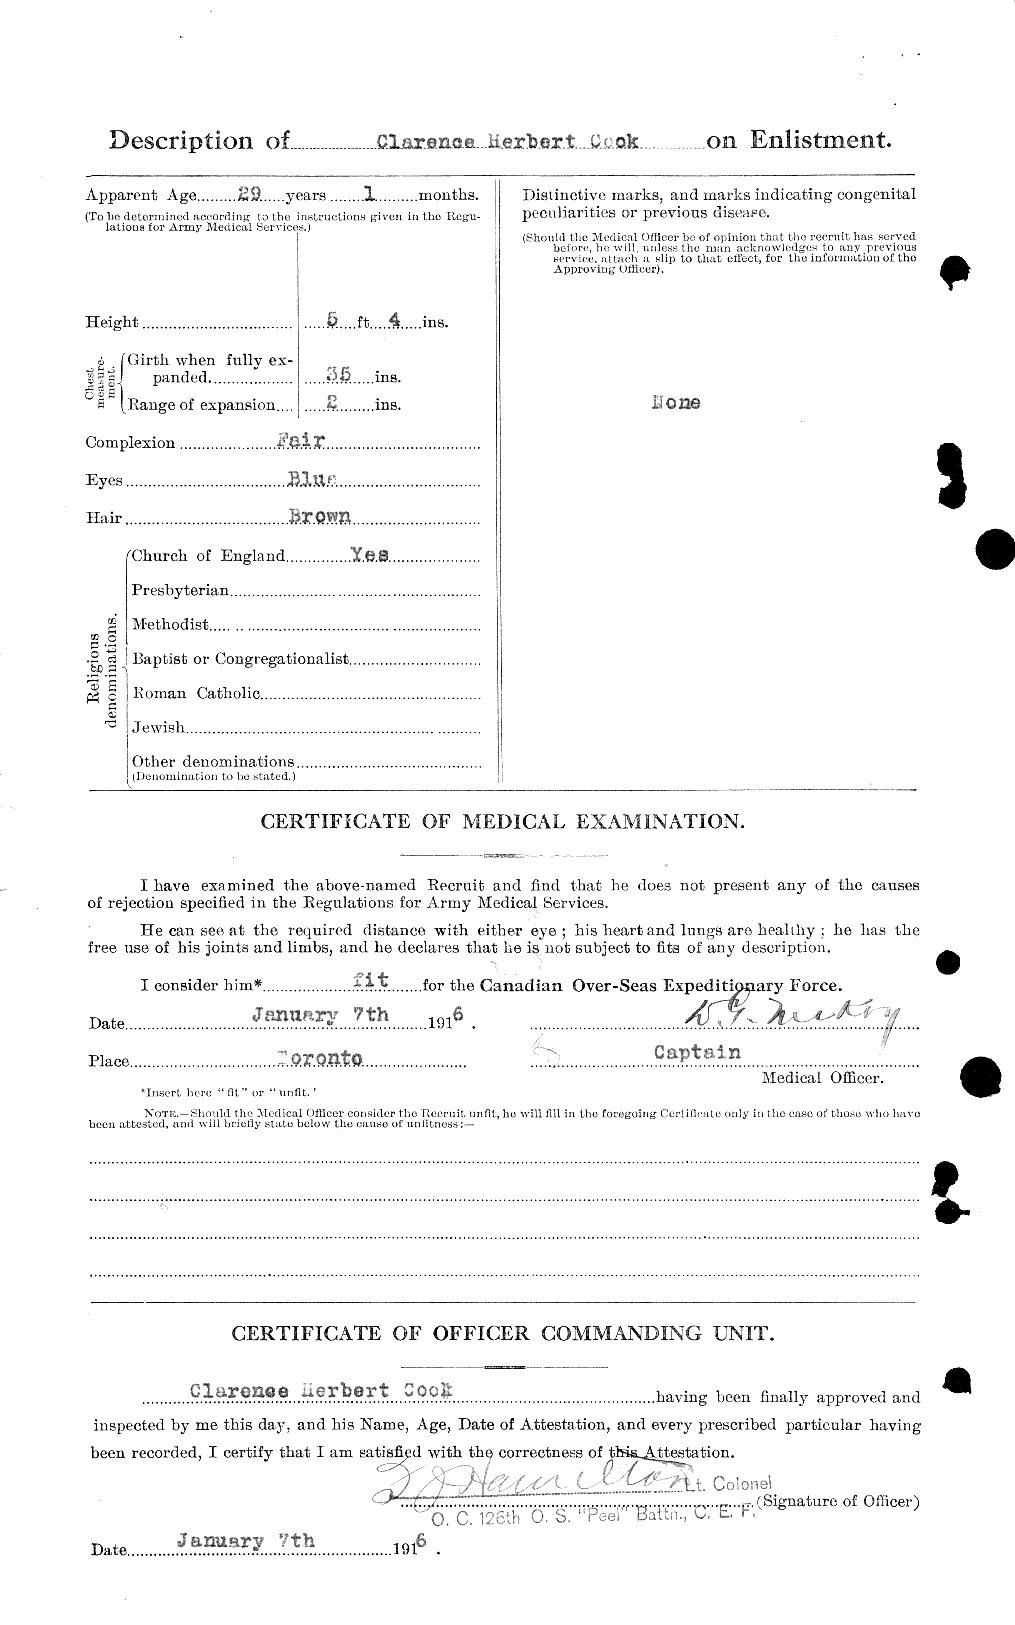 Dossiers du Personnel de la Première Guerre mondiale - CEC 038716b